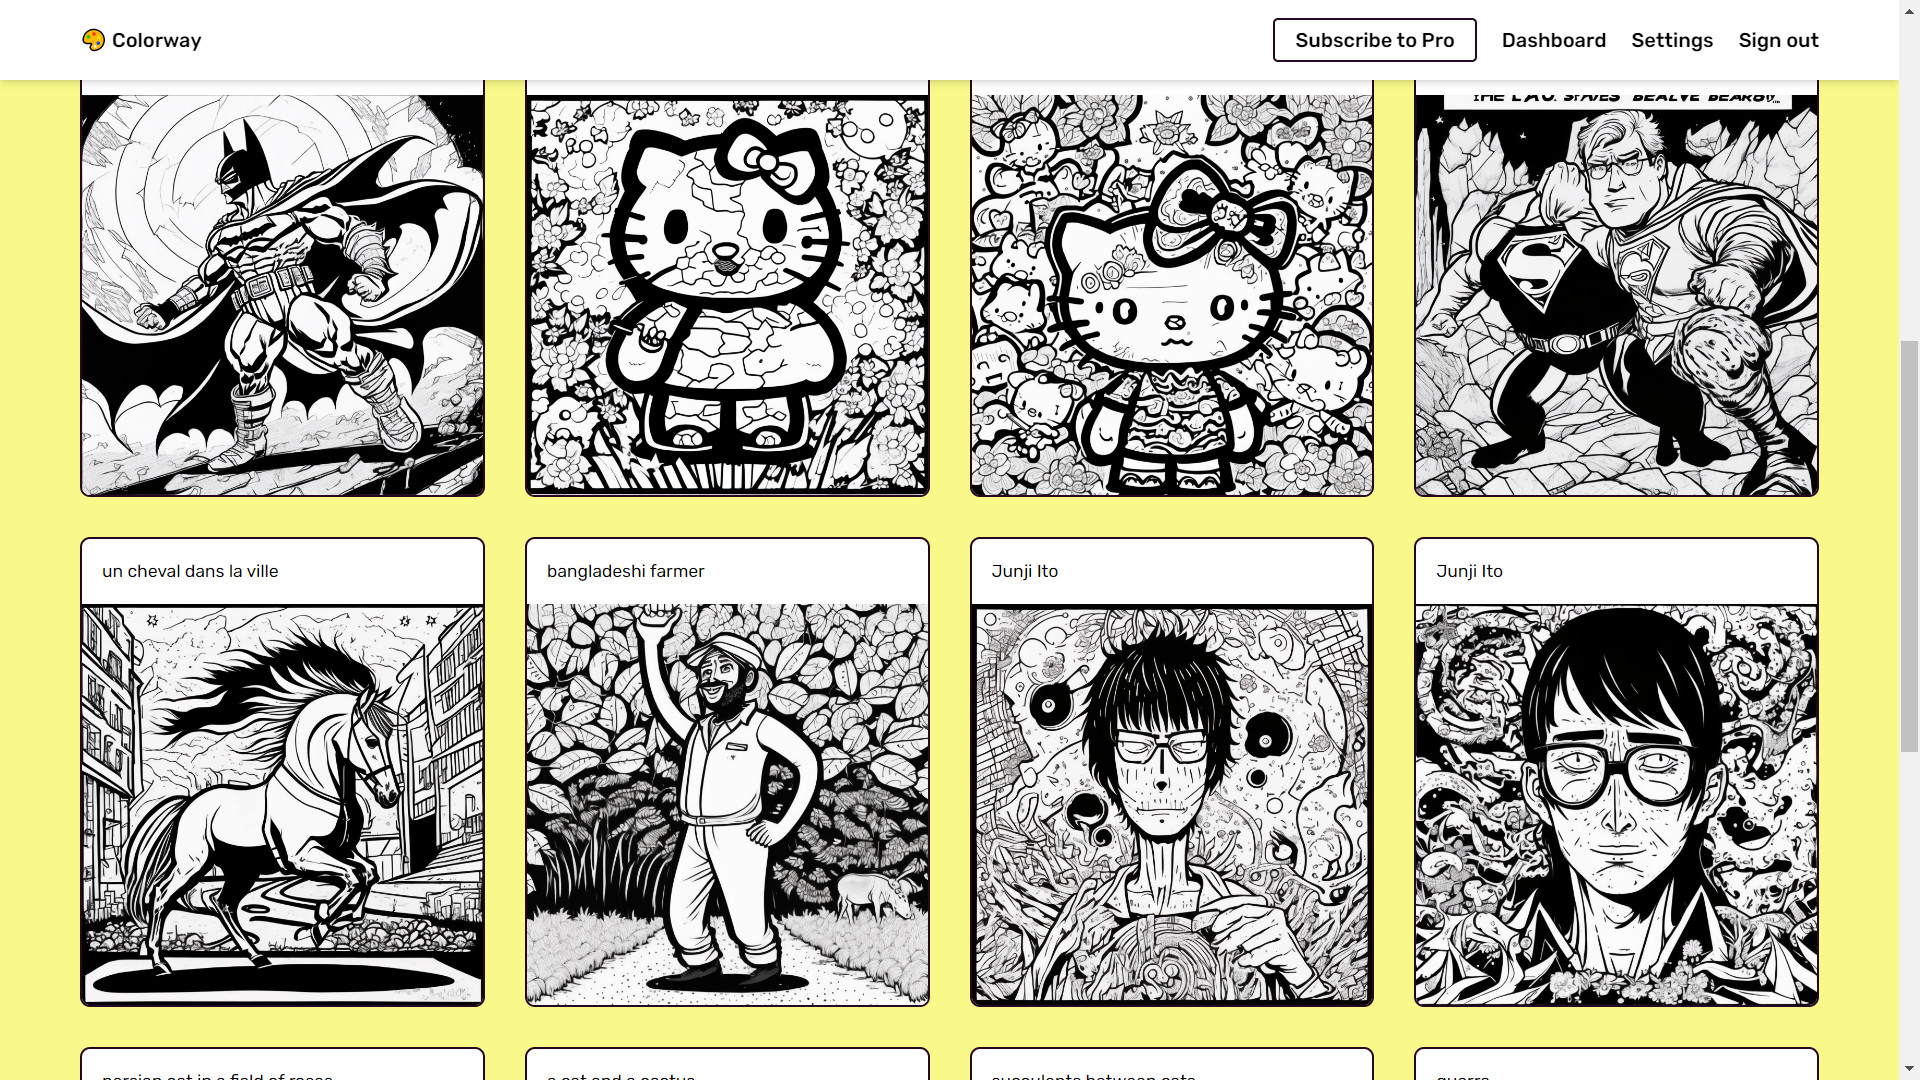 40 Desenhos de Crianças para Imprimir e Colorir no Dia das Crianças -  Online Cursos Gratuitos